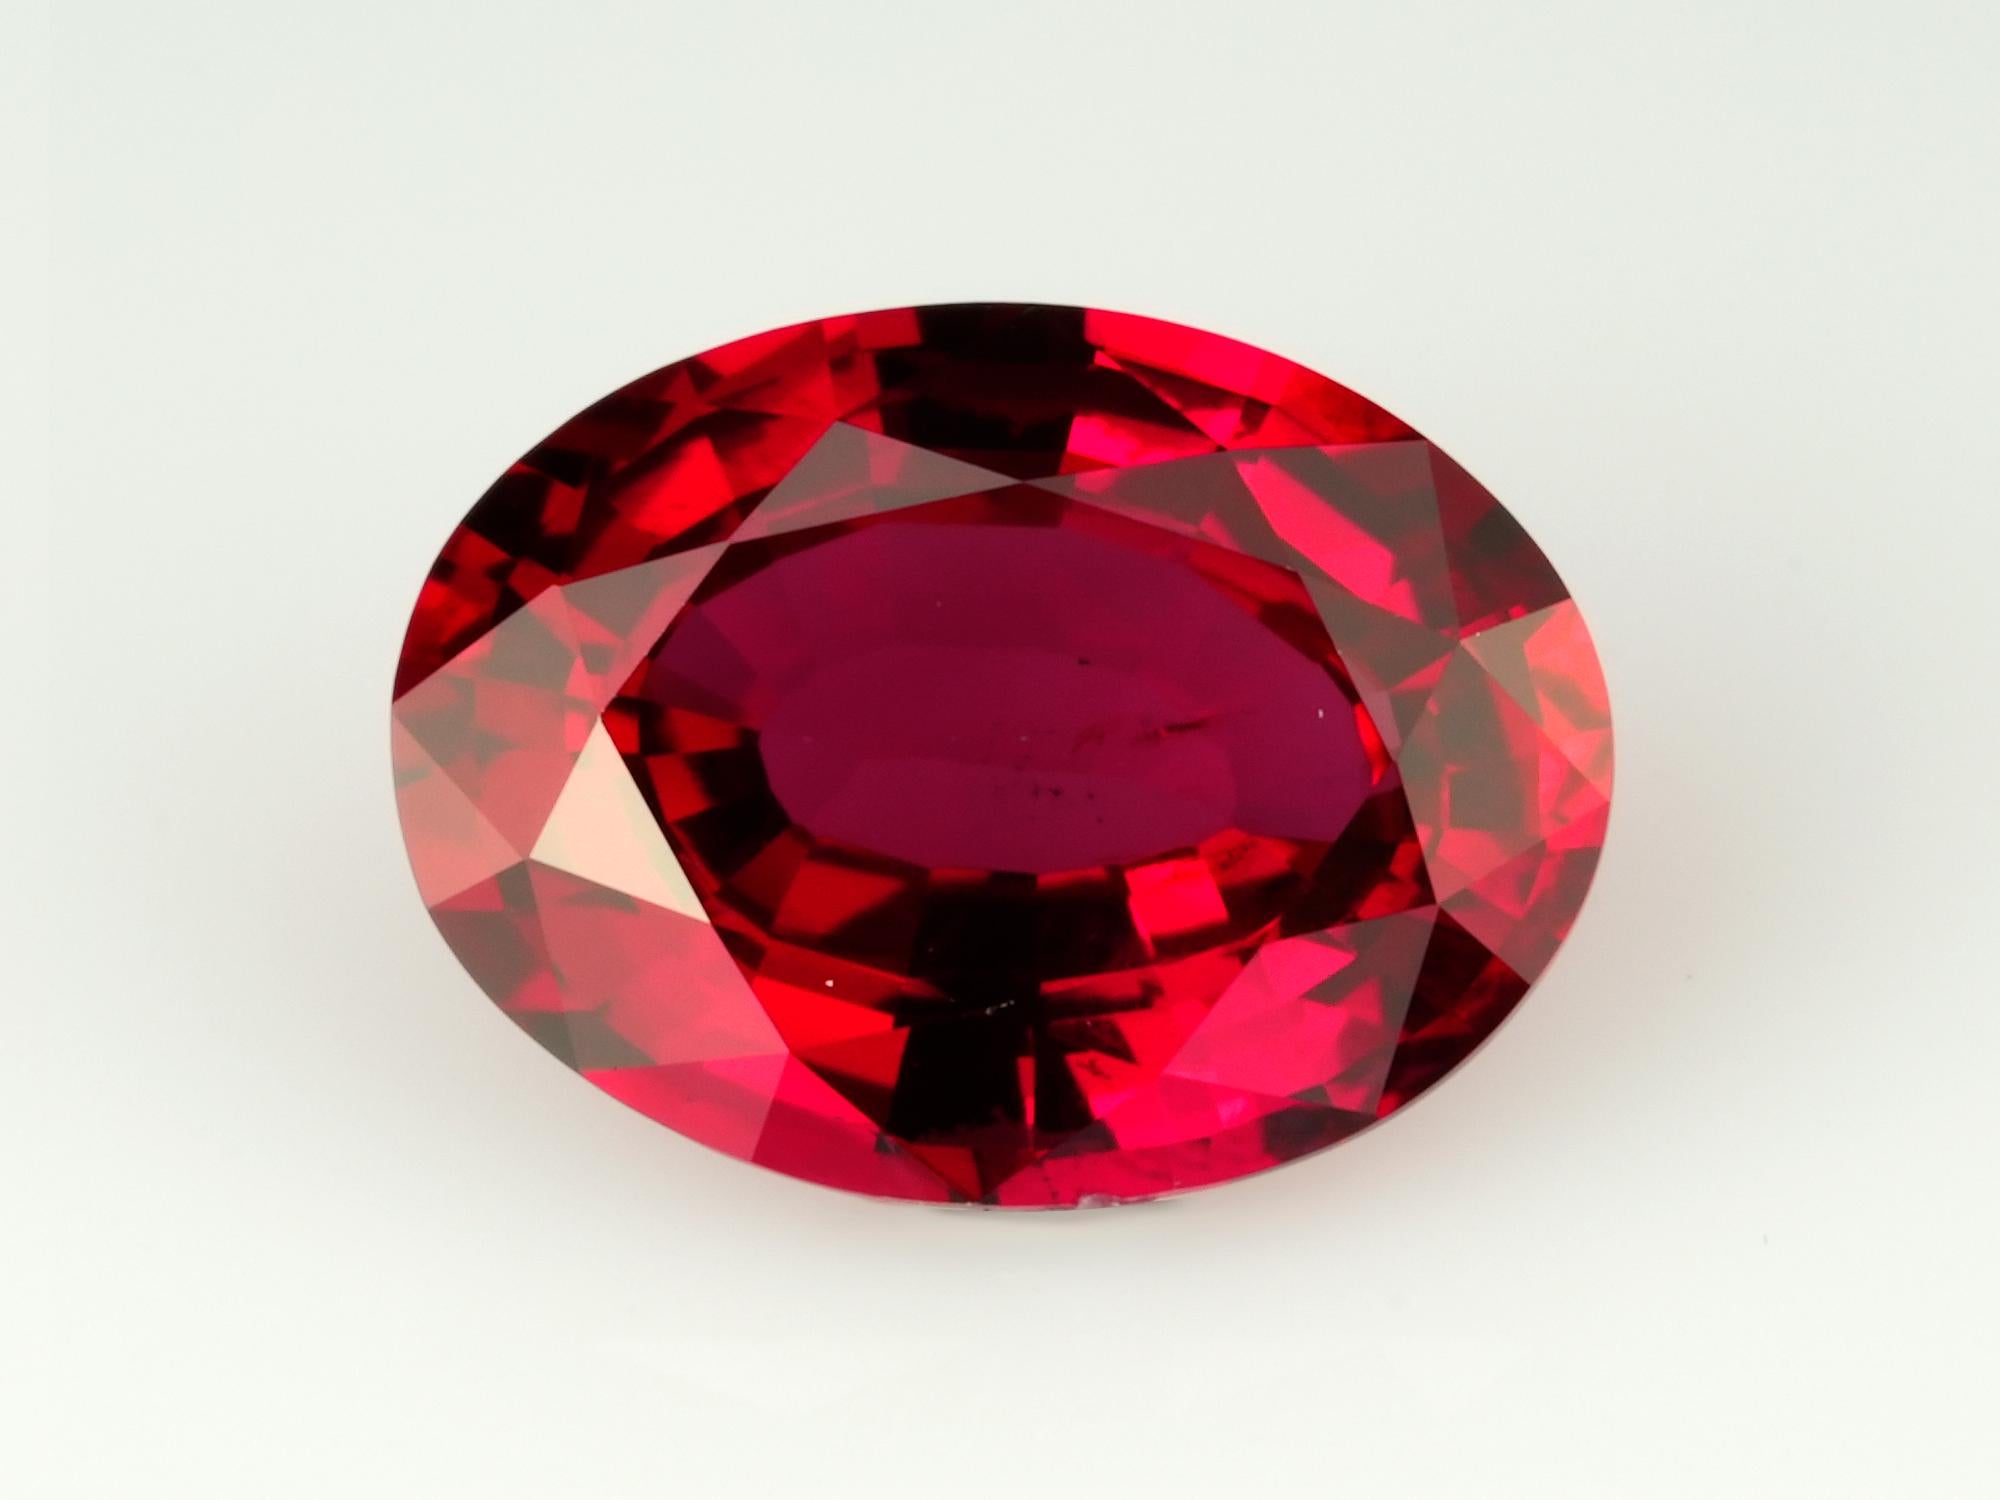 Rubis
Forme ovale
Couleur rouge
Brillant/Coupure d'étape
Dimension 5.23x6.98x2.86
Le poids est de 944 carats.

RARité DES PIERRES PRÉCIEUSES : LE PLUS GRAND PIERRE PRÉCIEUSE DES PIERRES

Considérez le voyage unique des pierres précieuses de couleur,